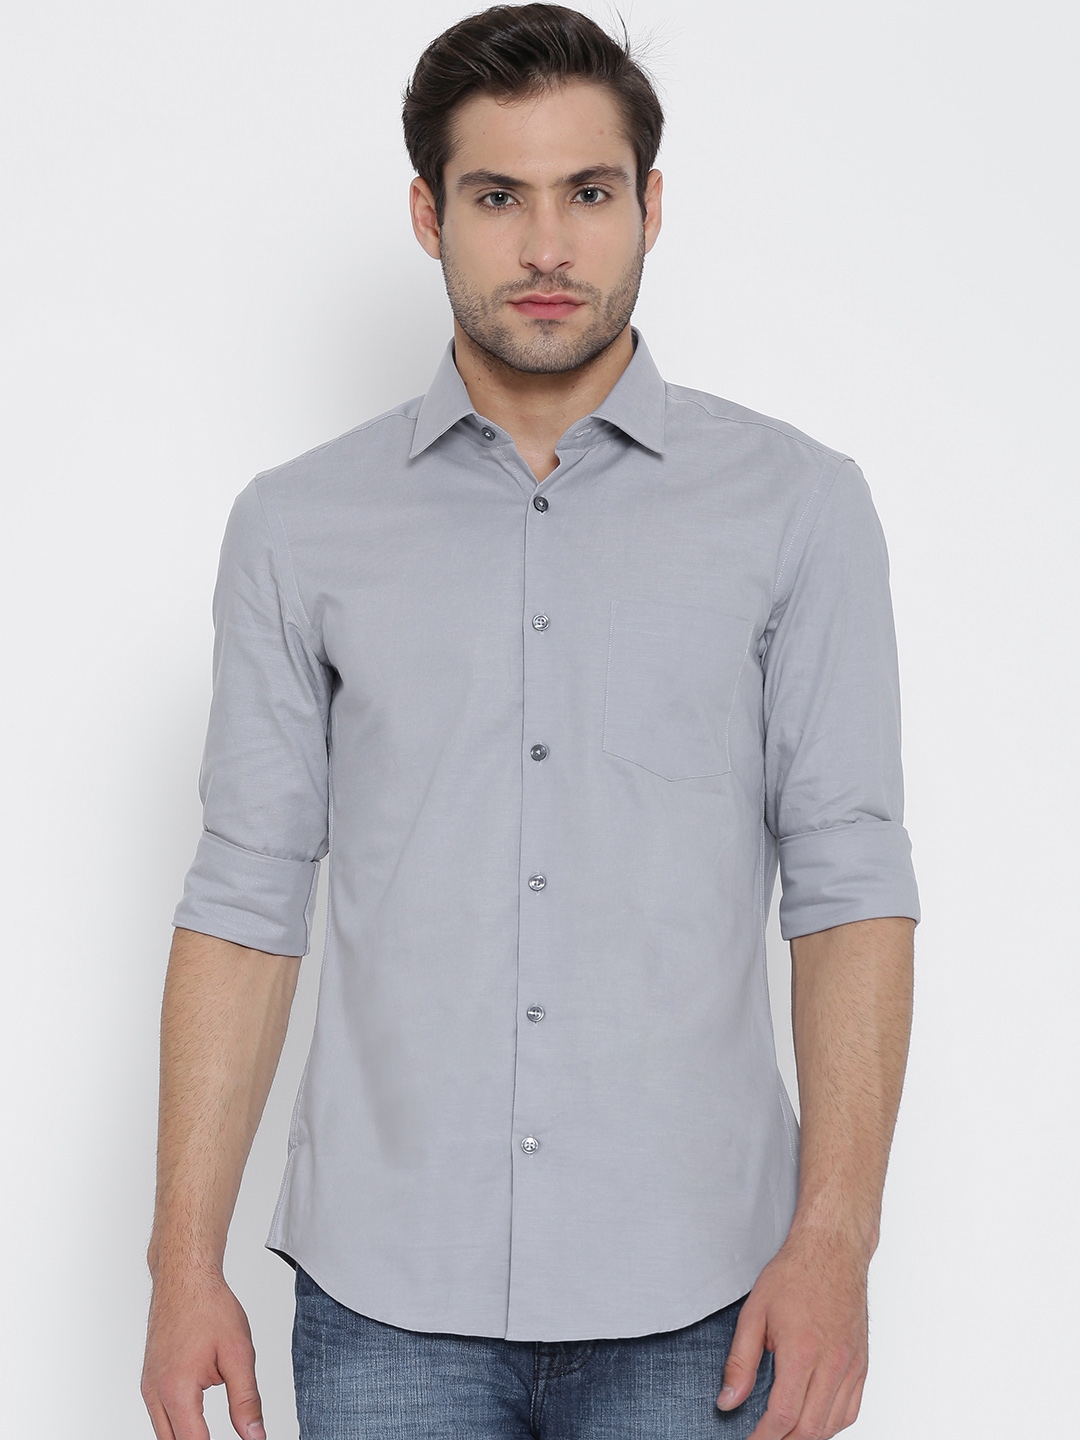 Grey Ash Colour Shirt | ubicaciondepersonas.cdmx.gob.mx